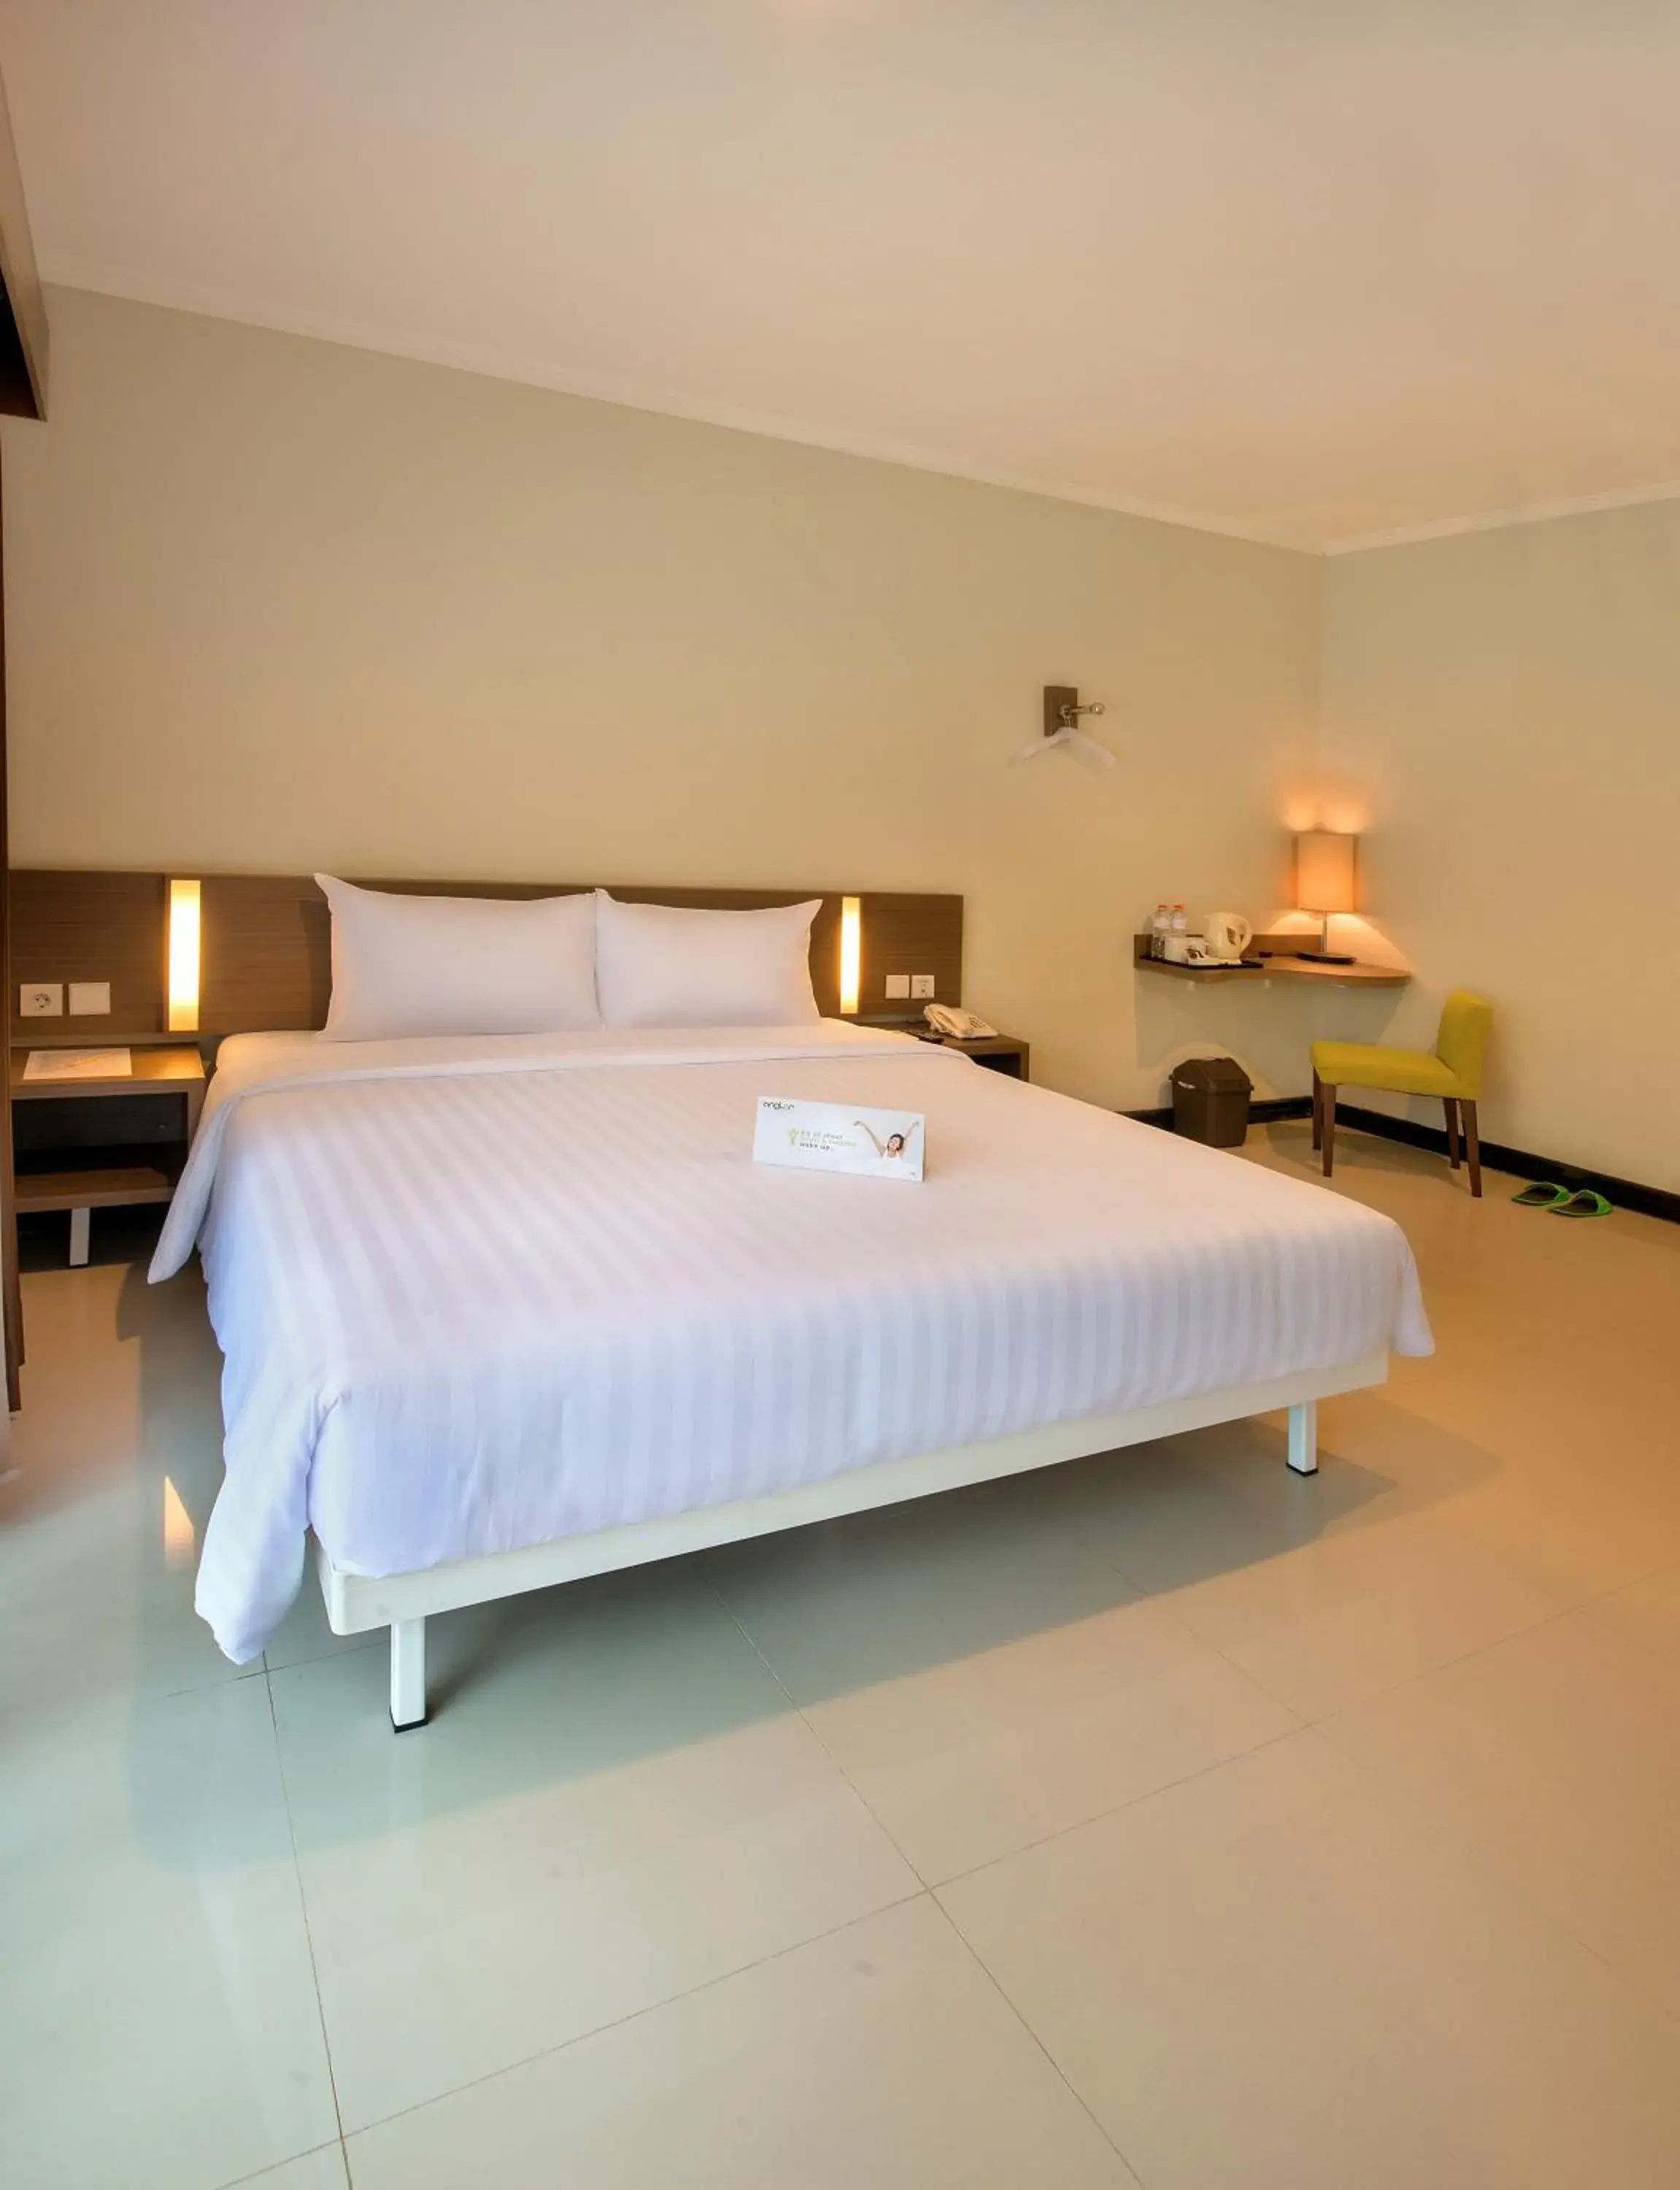 Bed in Whiz Prime Hotel Darmo Harapan Surabaya